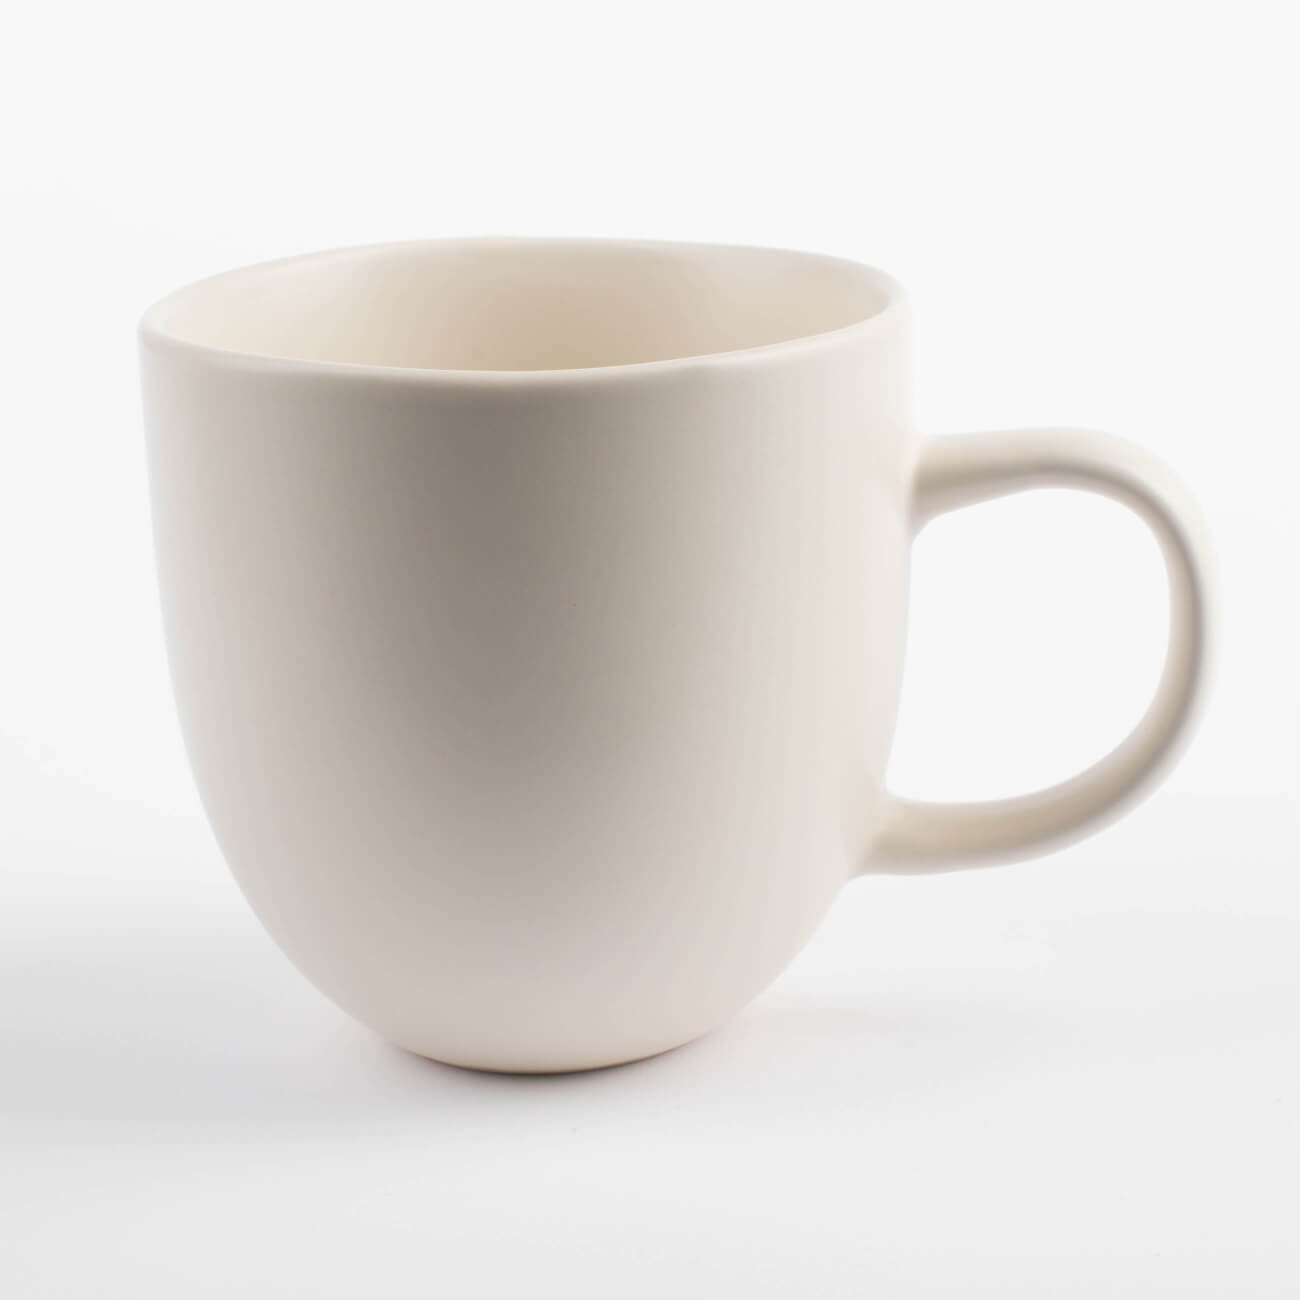 Mug, 390 ml, ceramic, cream, Uneven edge, Verso изображение № 1